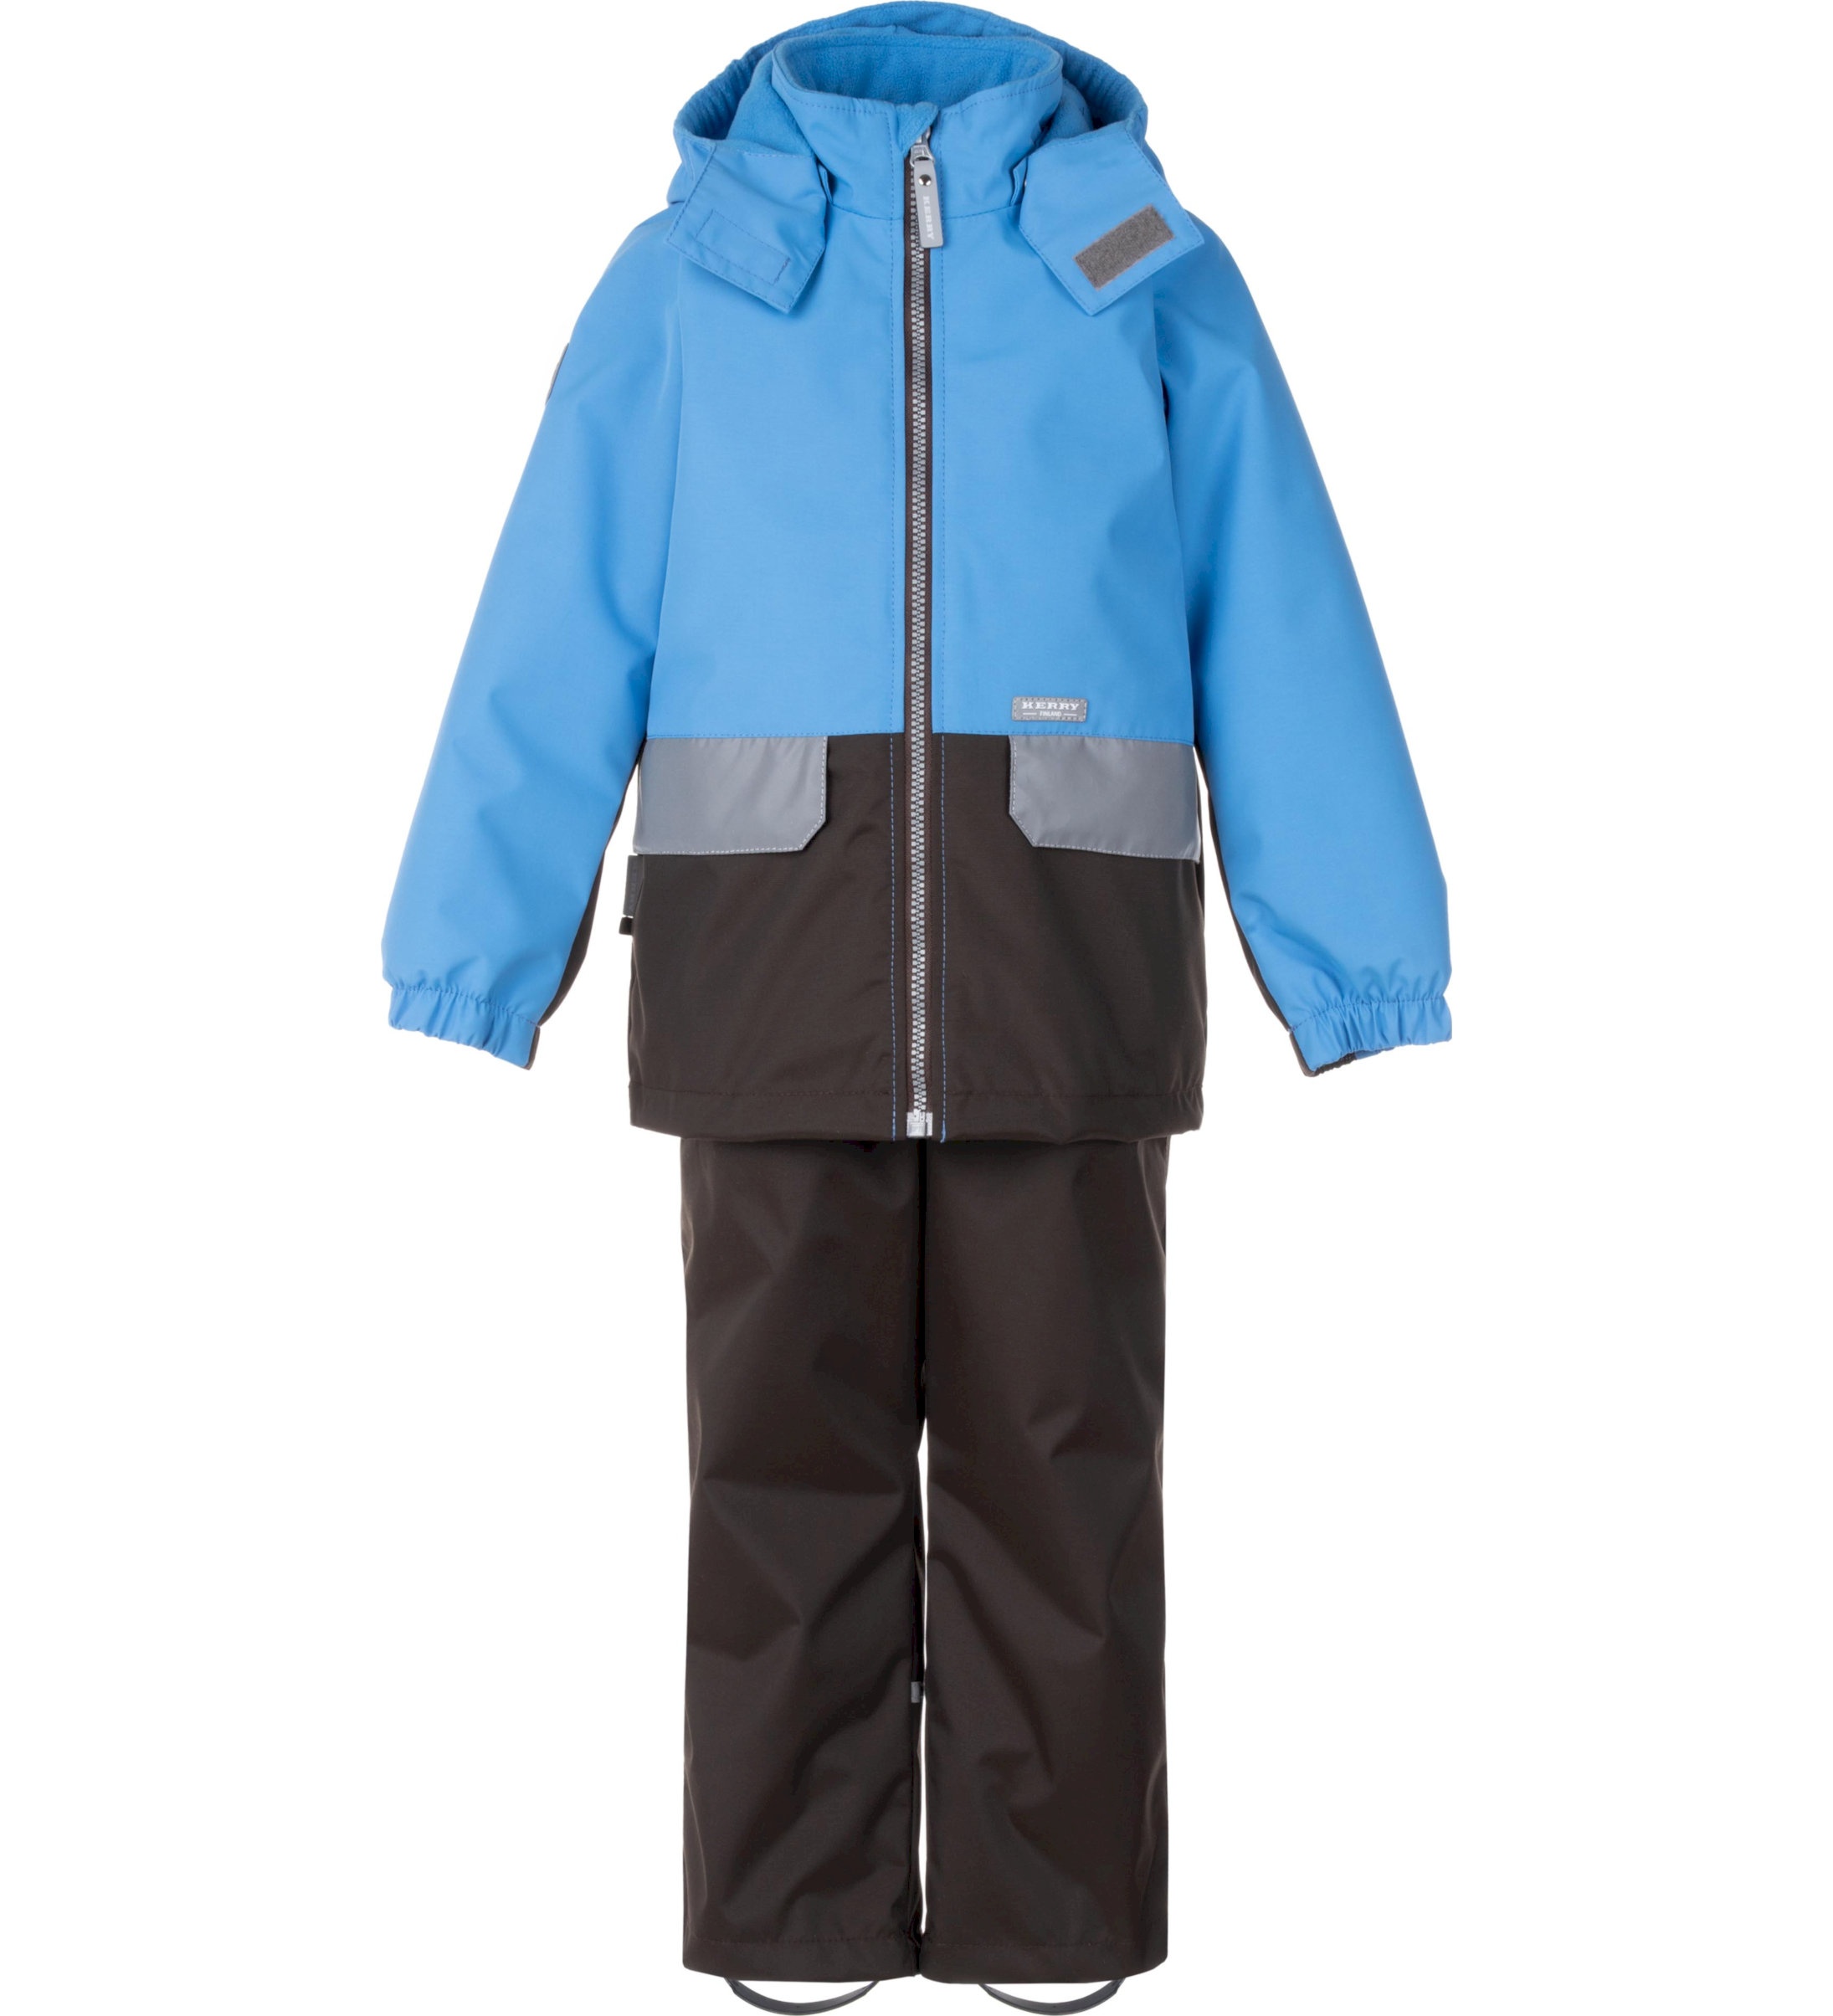 Комплект верхней одежды детский KERRY K24020, голубой; серый, 116 пылесос bort bac 500 22 900 вт сухая влажная уборка 22 л серый